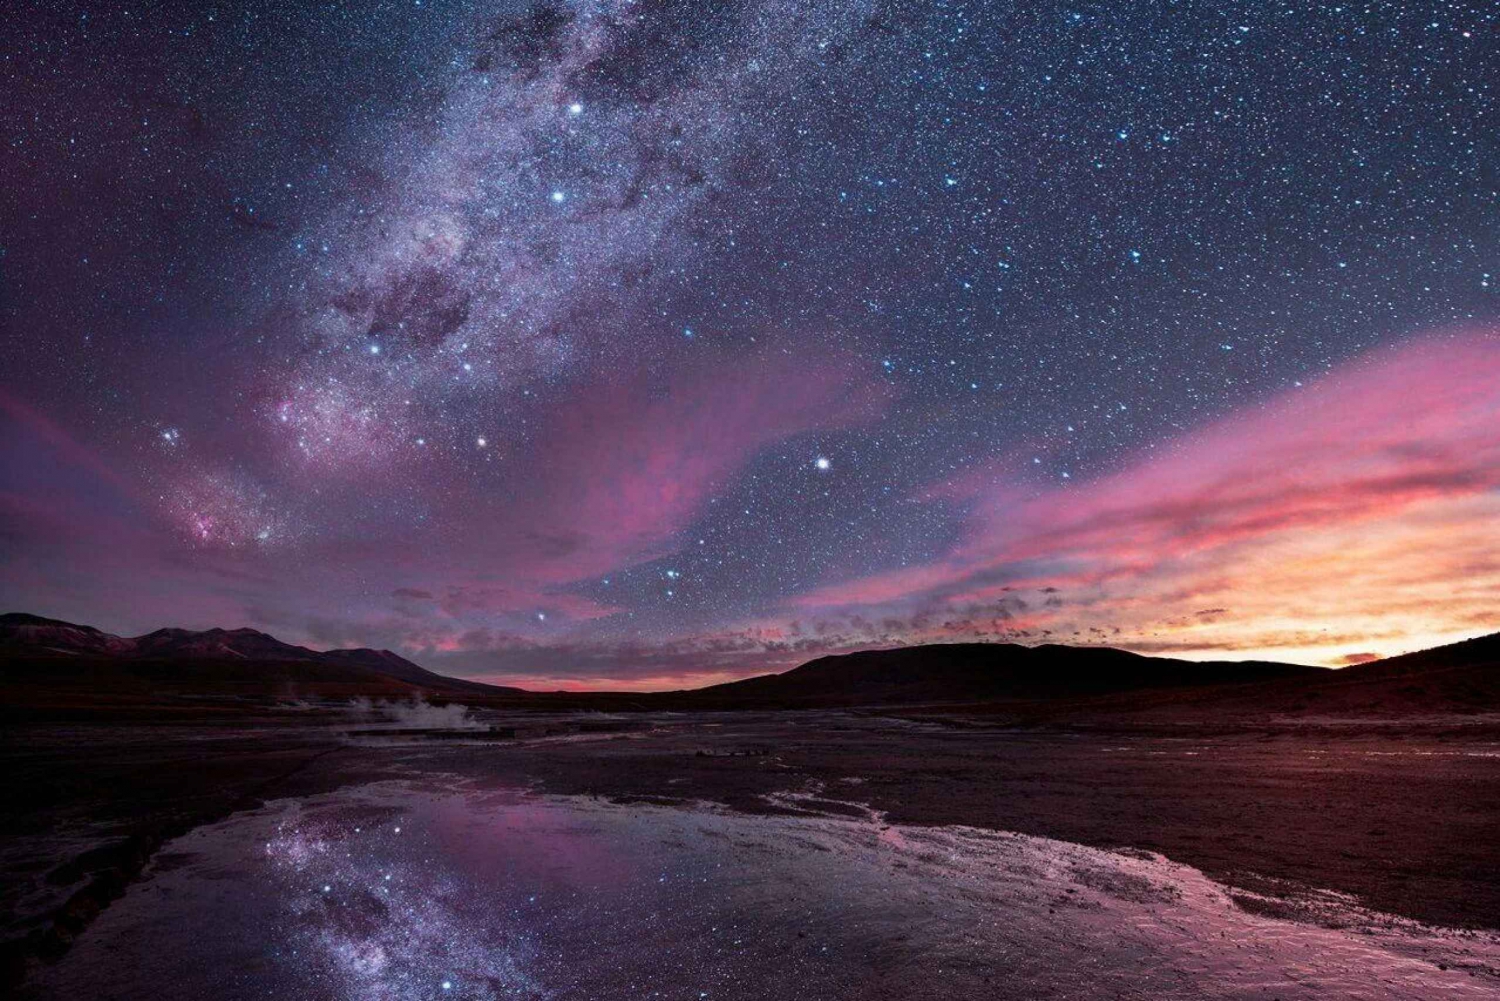 San Pedro de Atacama: Doświadczenie astronomiczne z astronomem